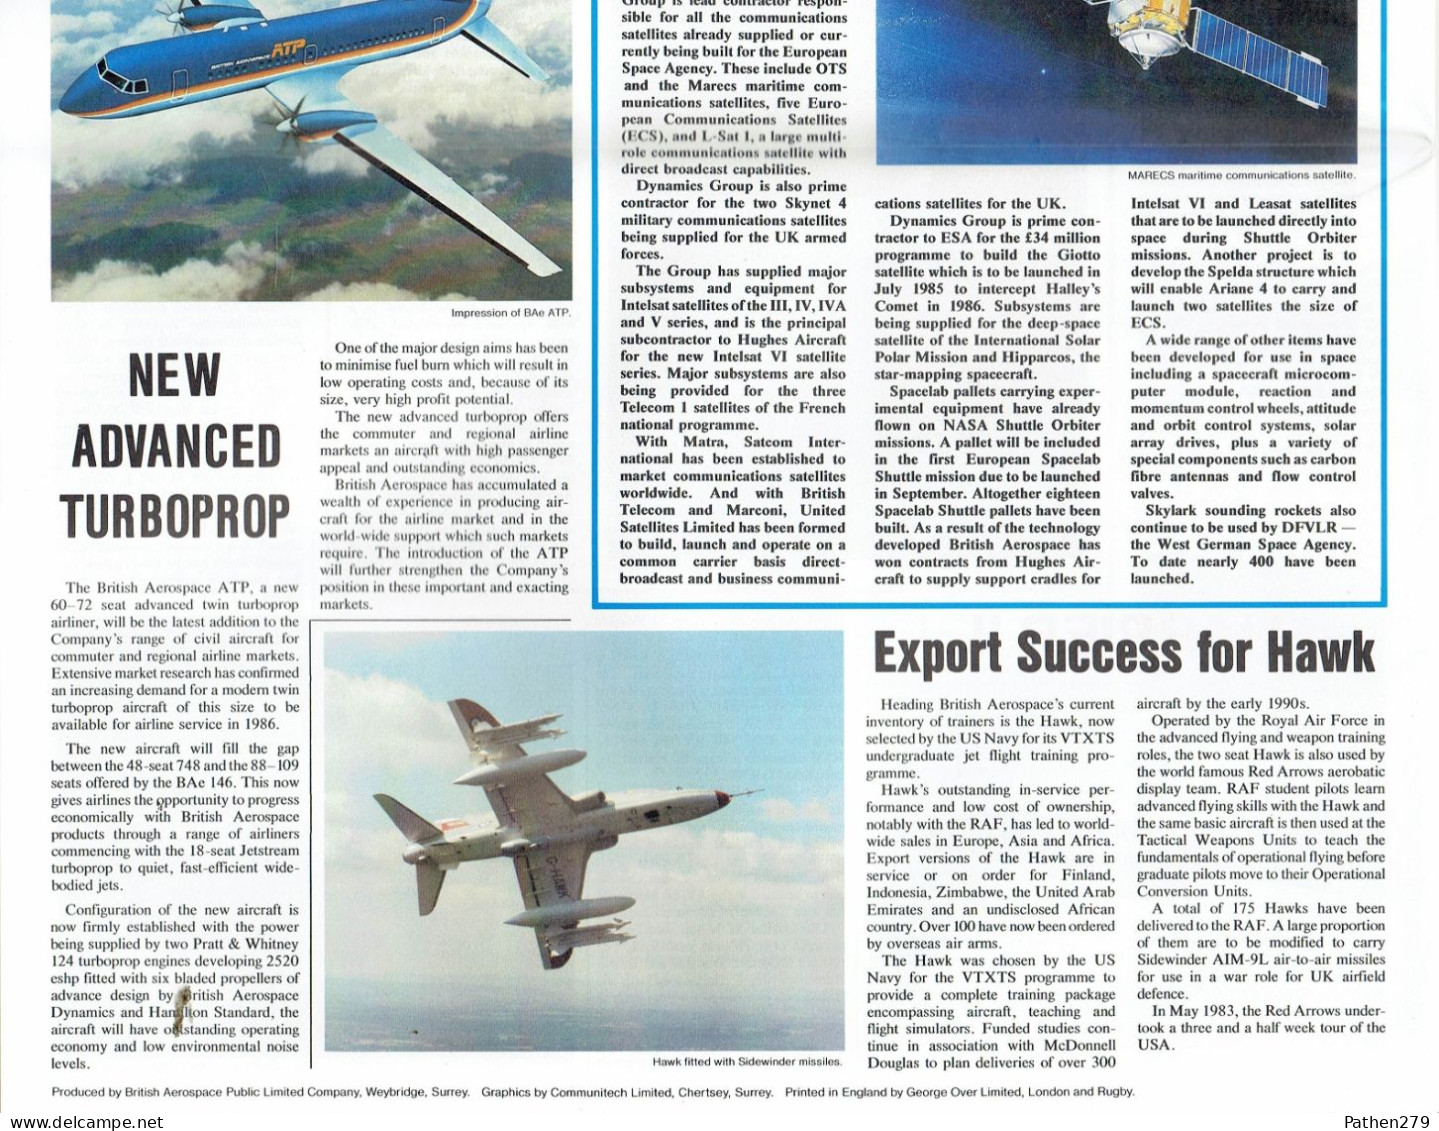 Journal British Aerospace Bulletin Pour Le Salon Aéronautique Du Bourget Juin 1983 - Transportes